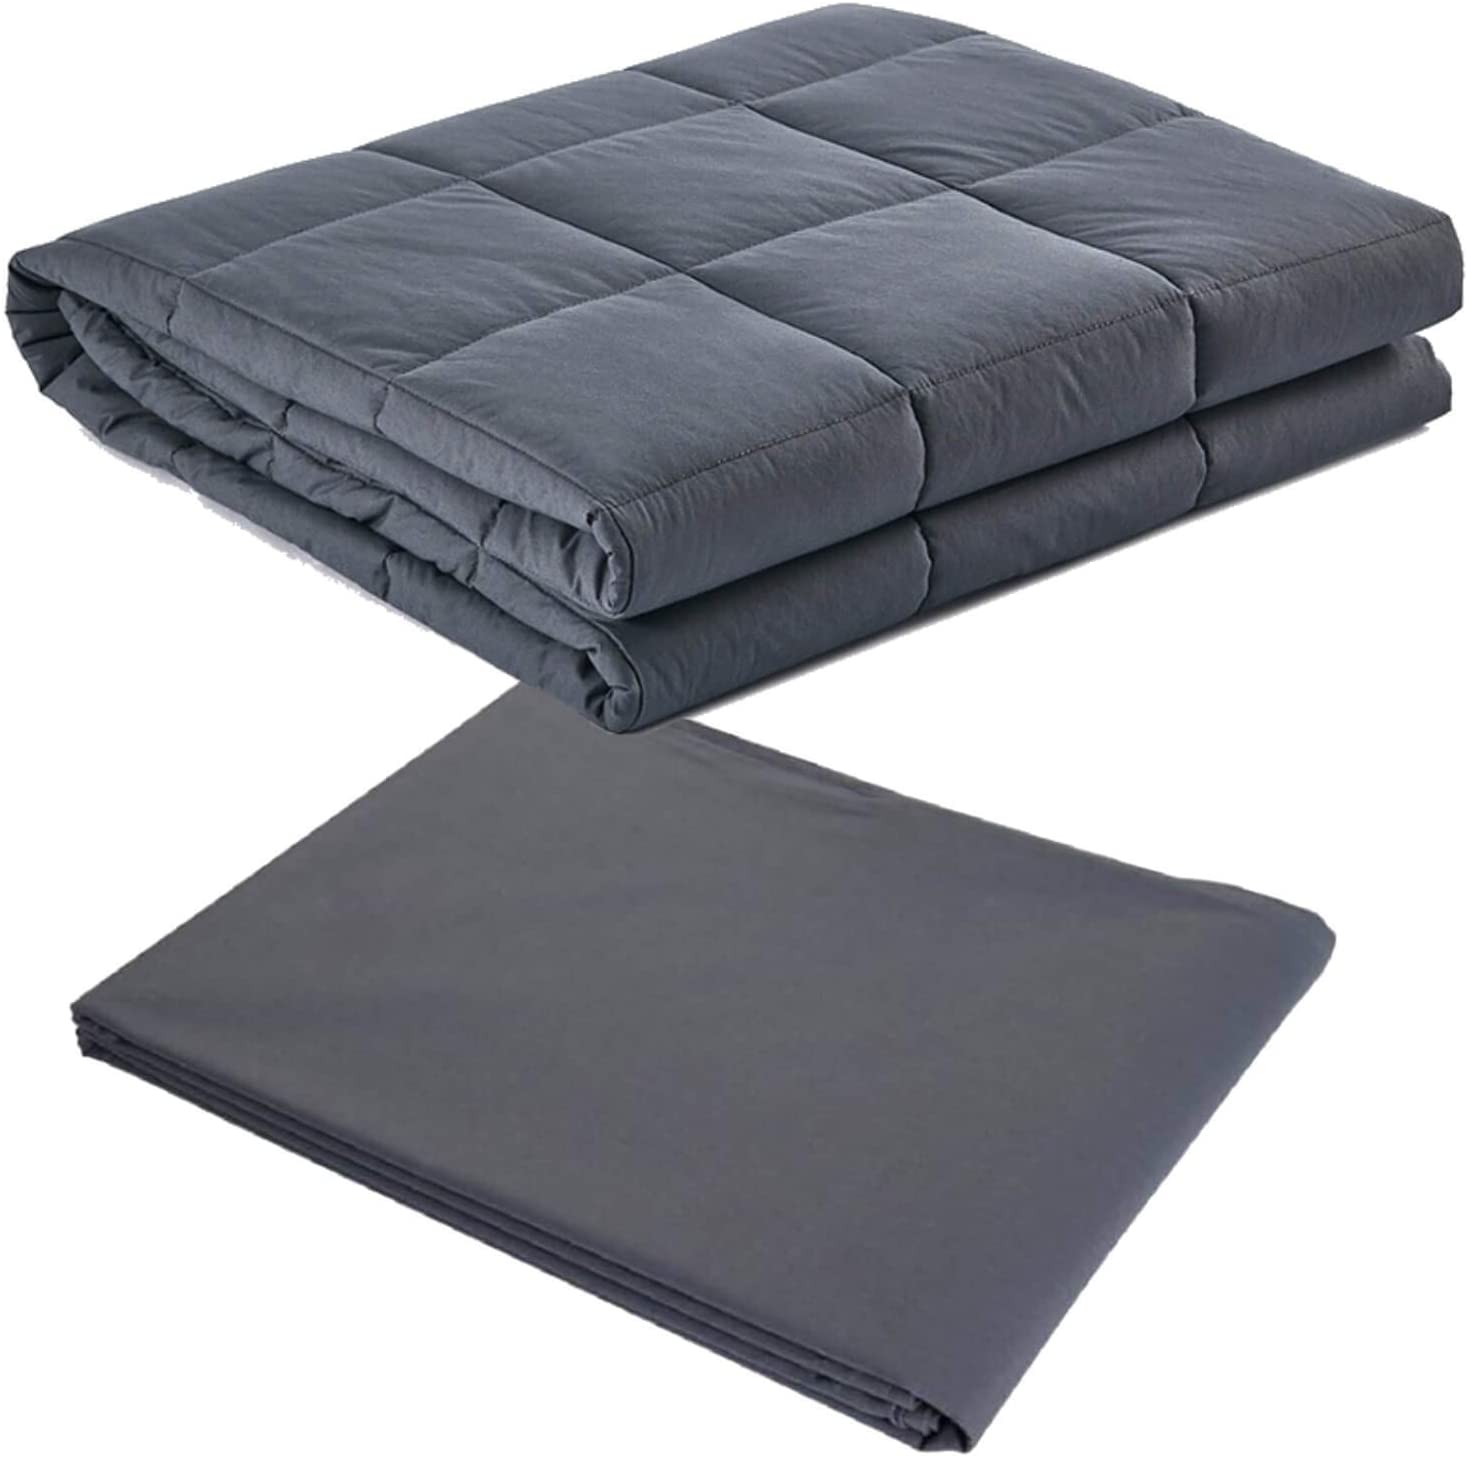 Gewichtete beheizte tragbare Decke - Beruhigender Komfort in jeder